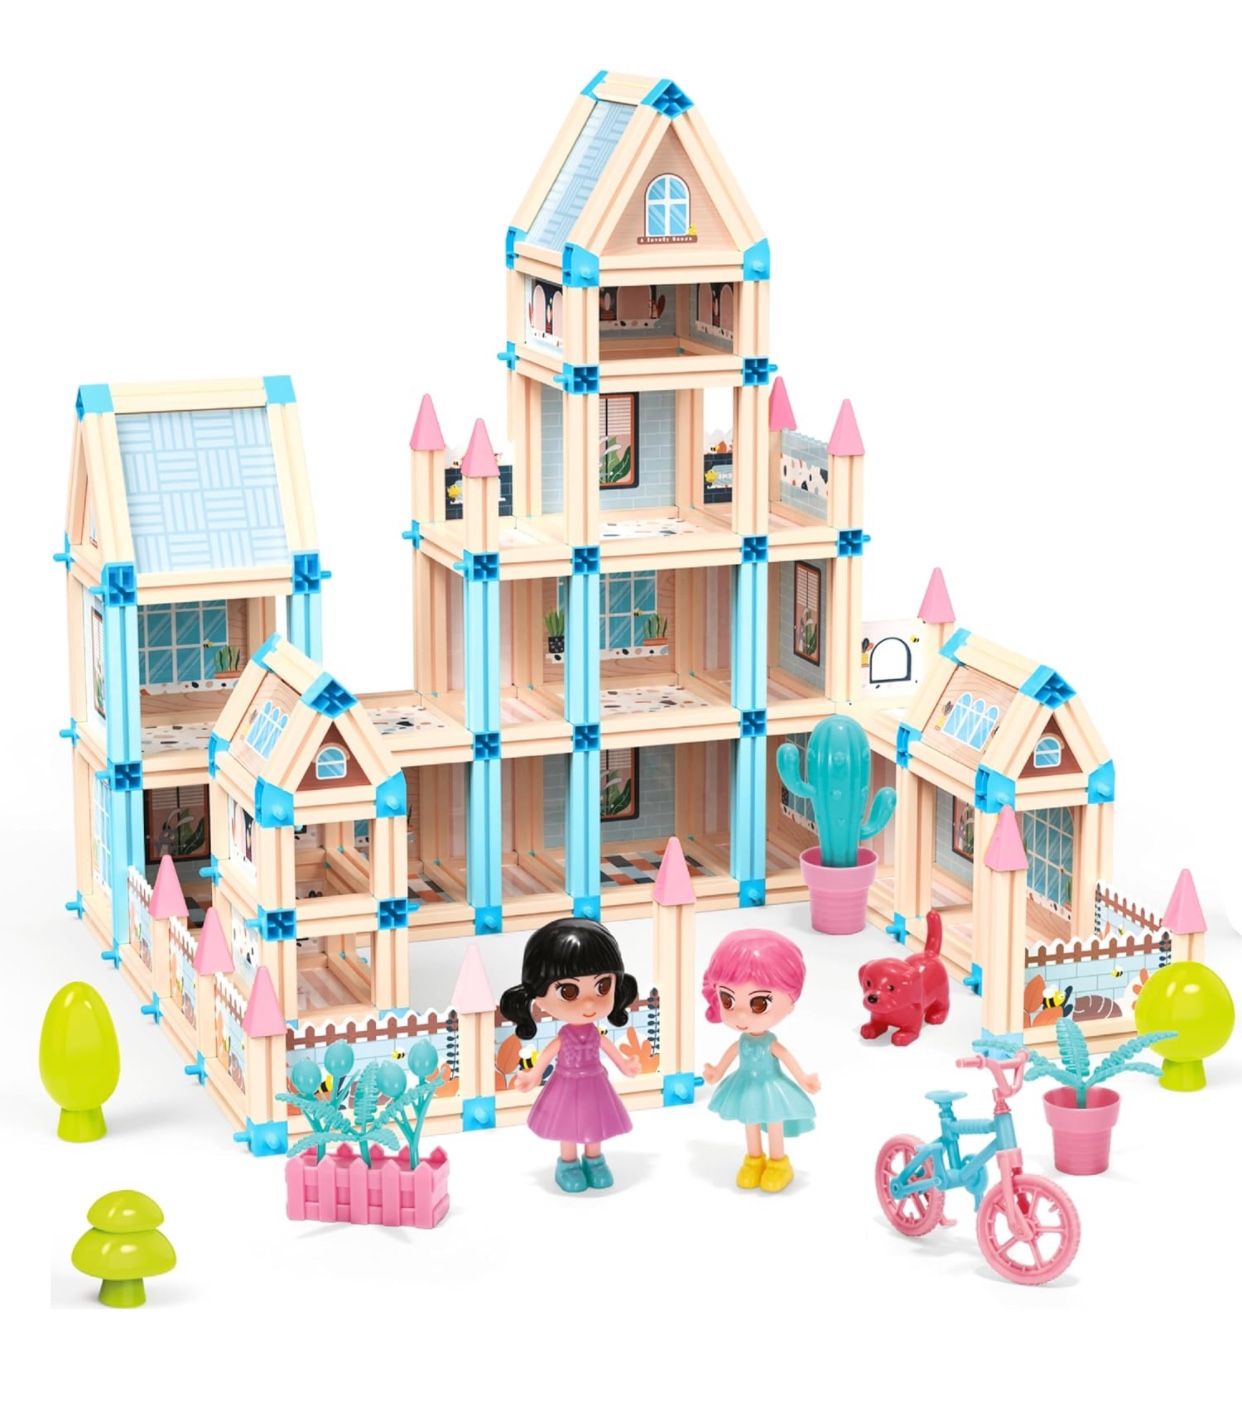 342-Piece 3D Princess Castle Villa Doll House Building Toy Set 